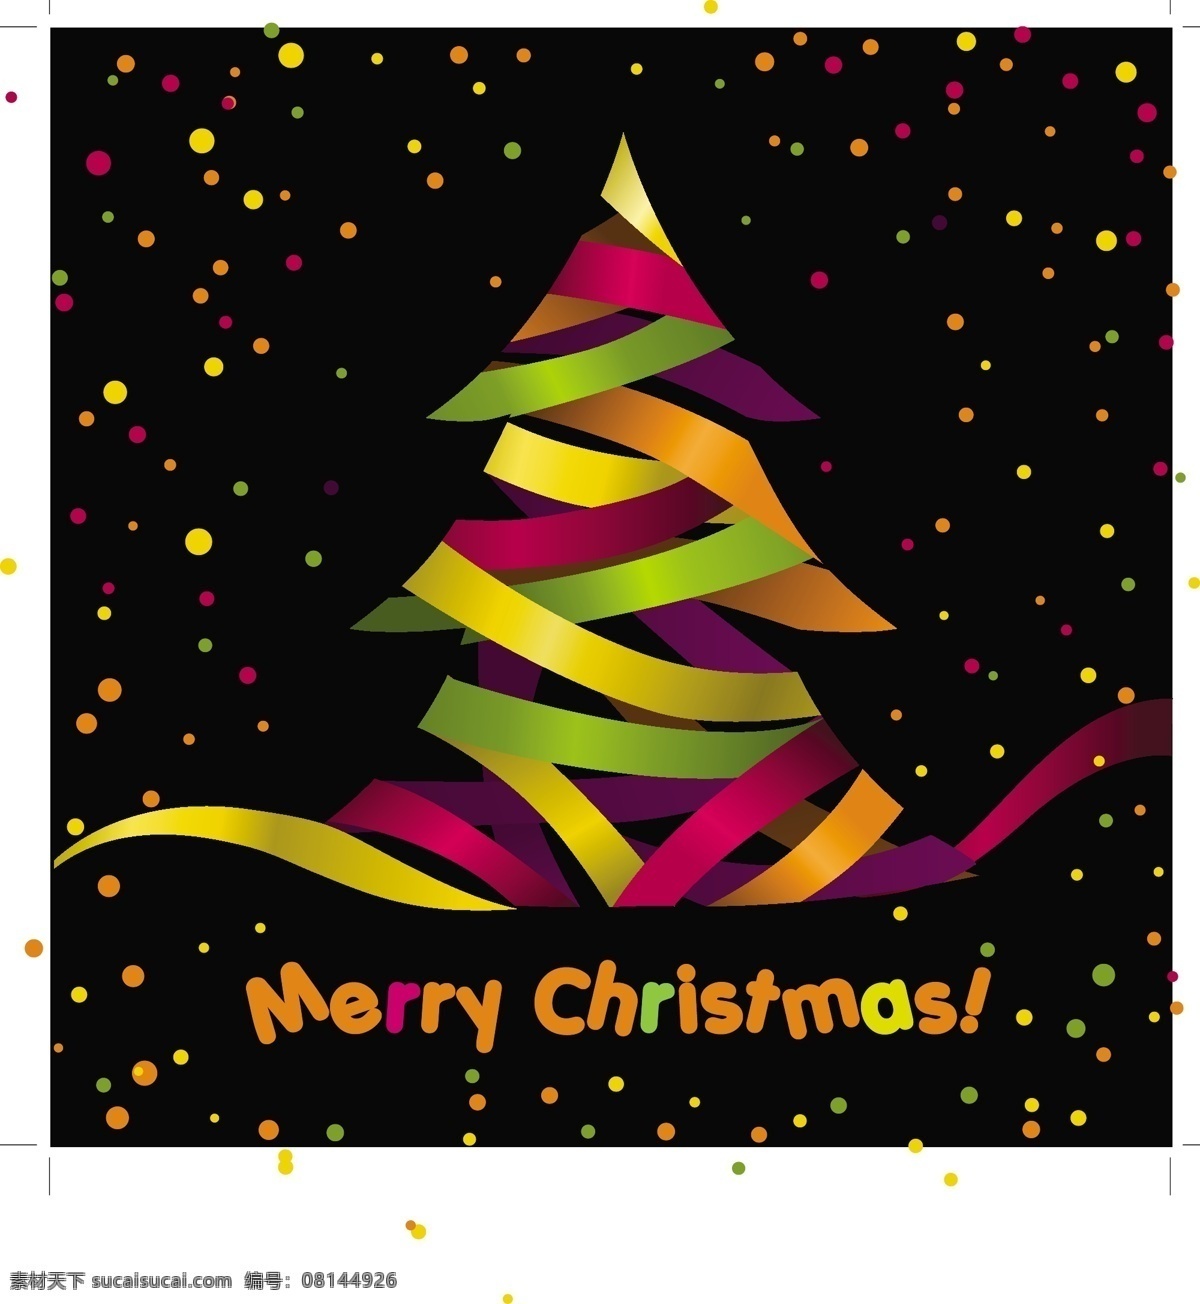 创意 多彩 纸条 圣诞树 背景 圣诞节 矢量素材 星光 折纸 节日素材